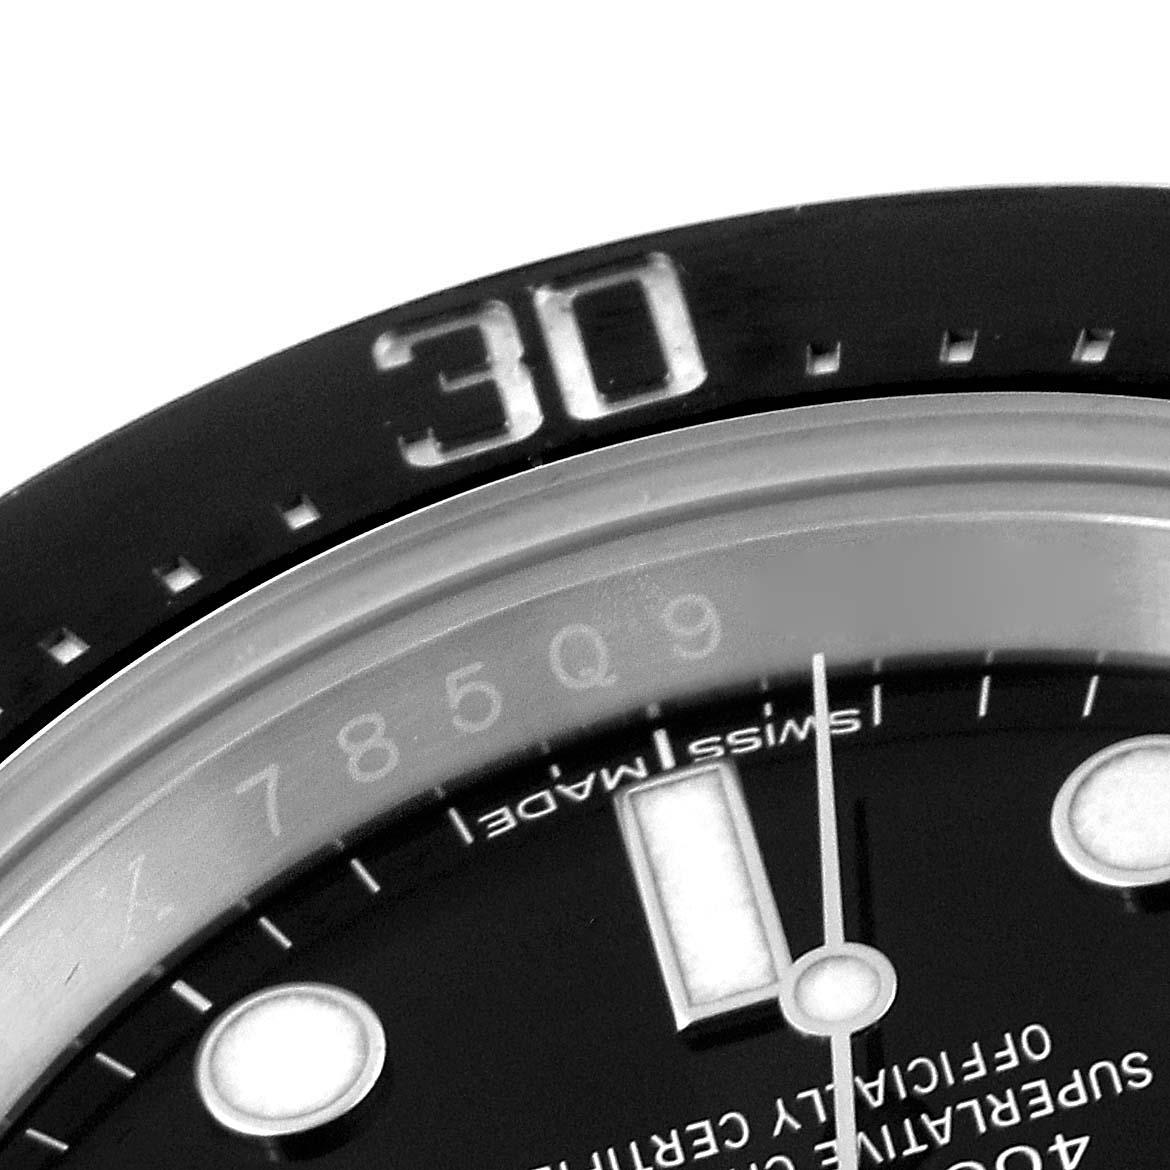 Rolex Seadweller 43mm 50th Anniversary Steel Mens Watch 126600 Box Card. Mouvement automatique à remontage automatique, officiellement certifié chronomètre. Boîtier oyster en acier inoxydable de 43 mm de diamètre. Logo Rolex sur la couronne. Lunette